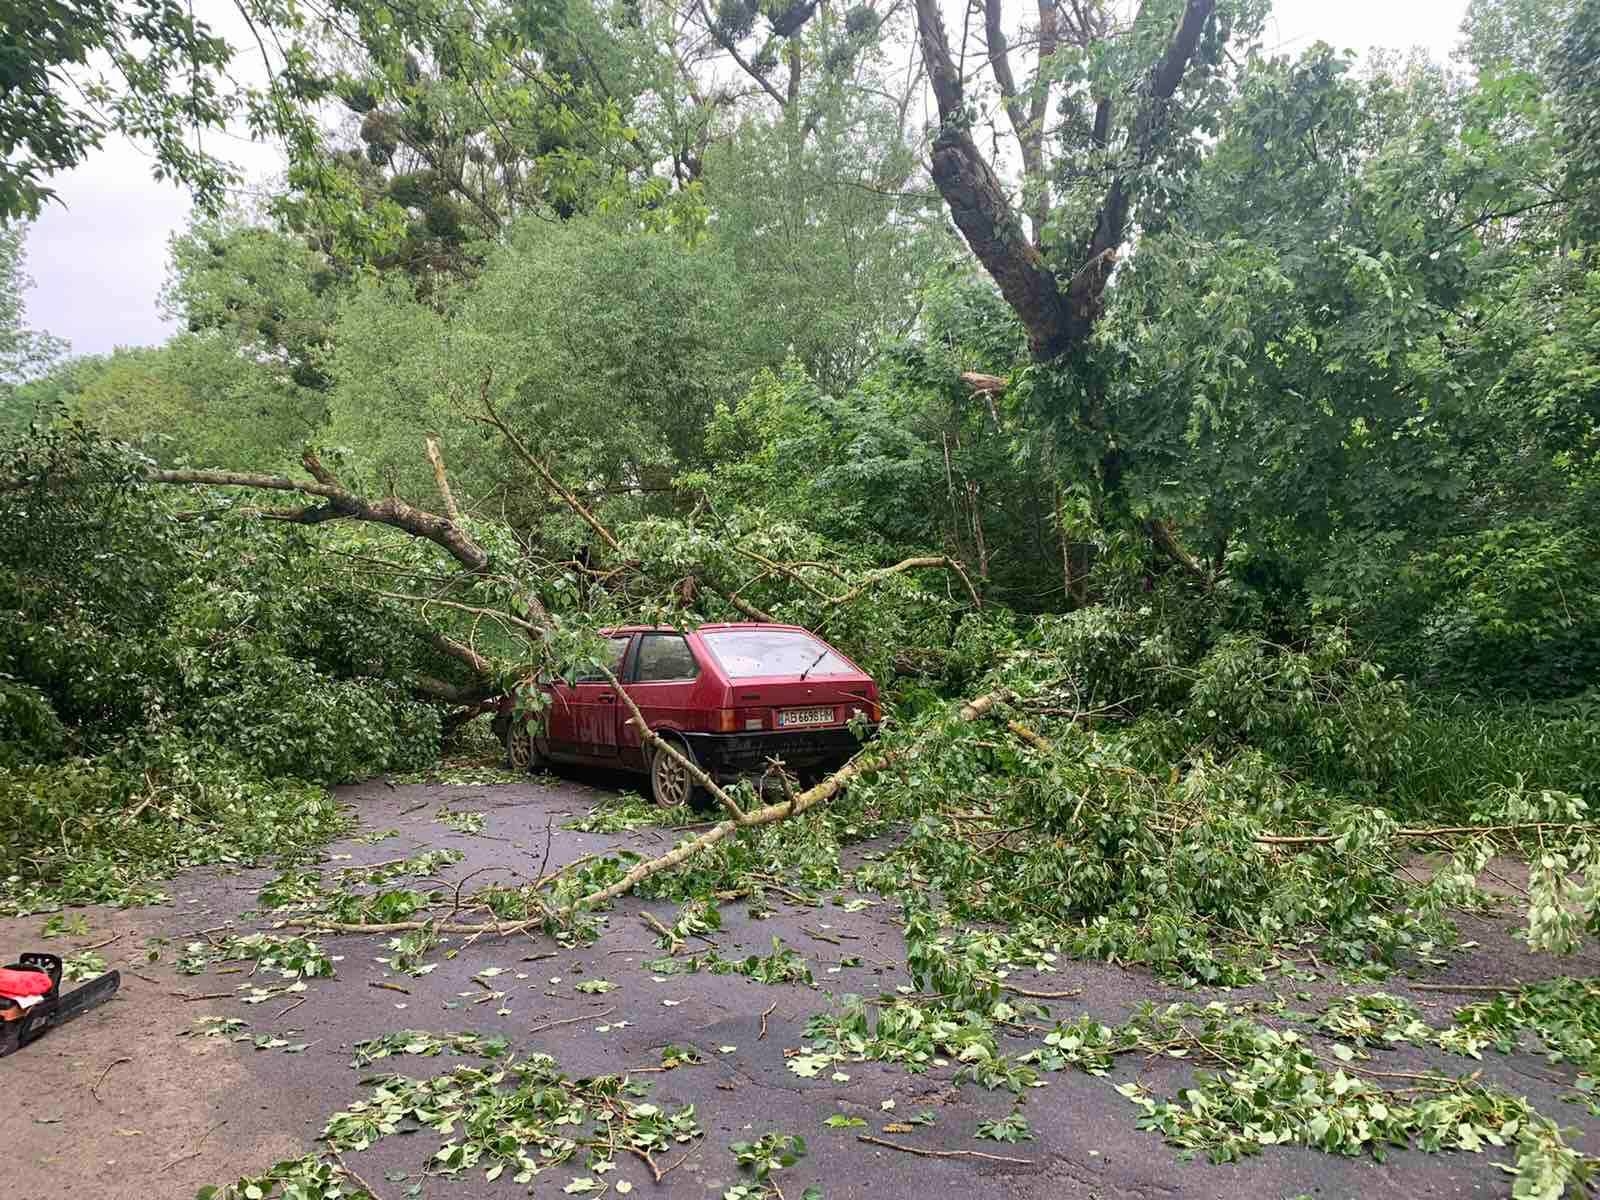 2 червня внаслідок сильного пориву вітру з автошляхів Вінницької області бійці ДСНС прибрали шість повалених дерев, які перешкодили руху автотранспорту